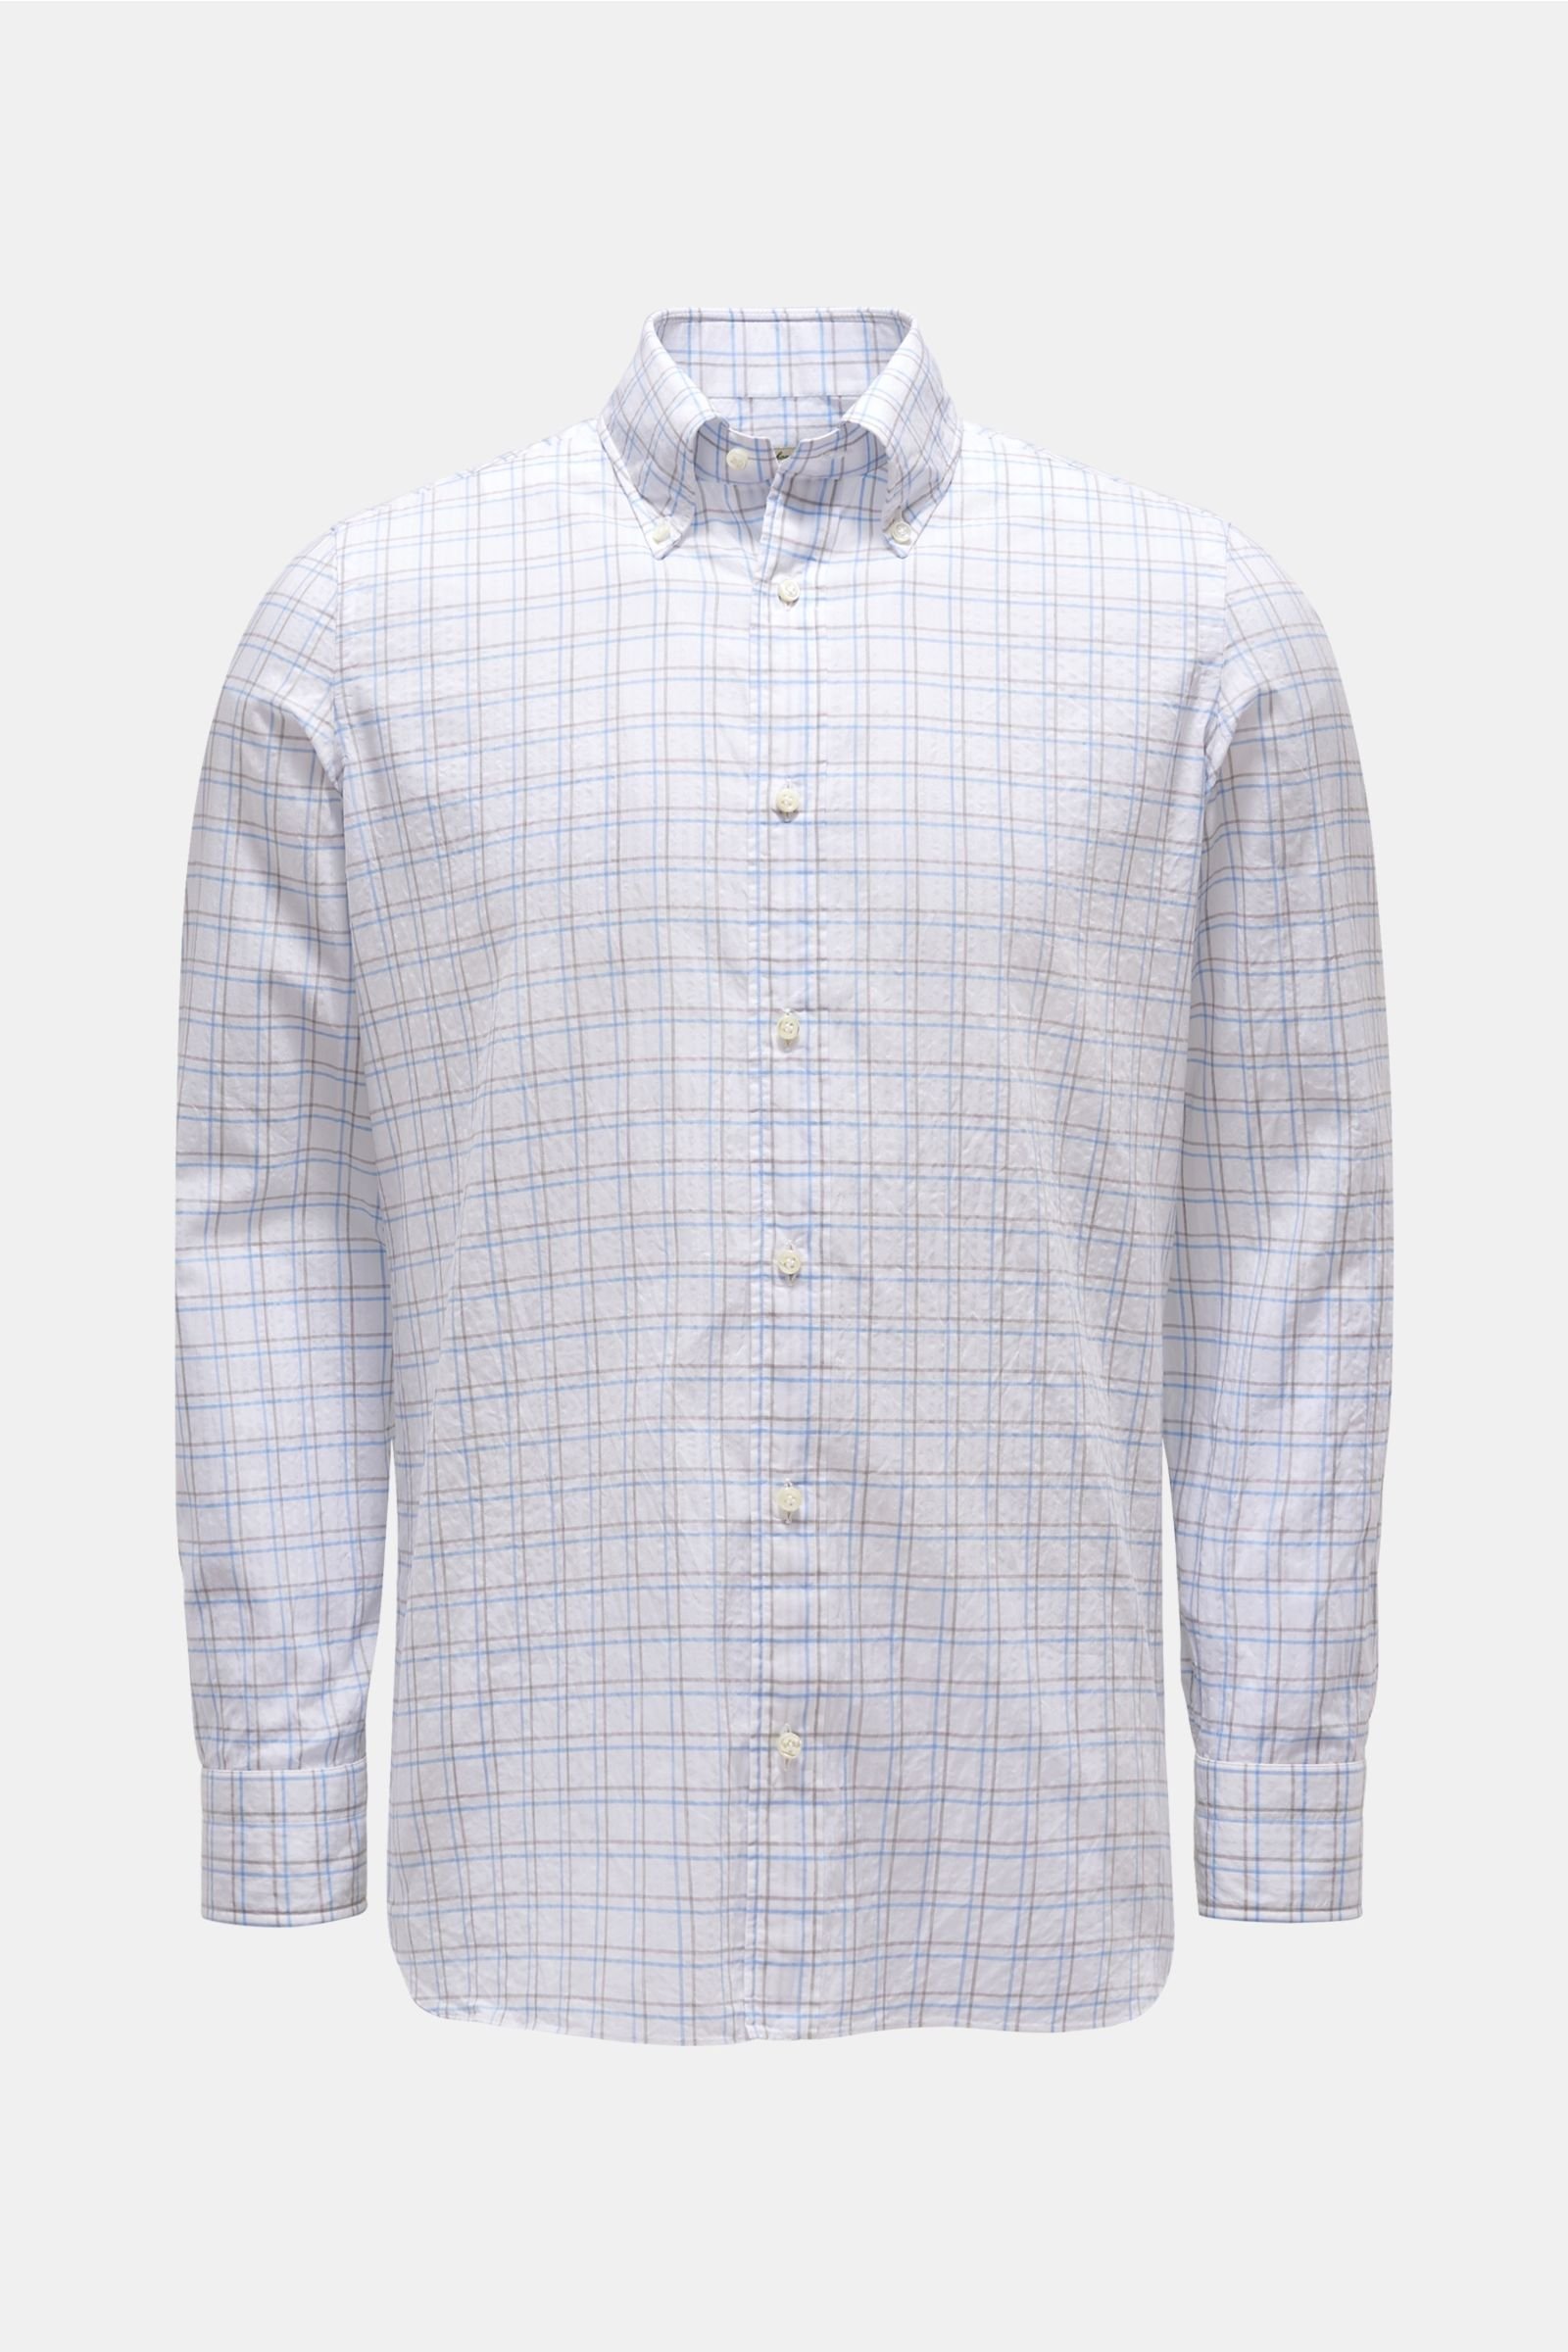 Seersucker-Hemd Button-Down-Kragen grau/weiß kariert